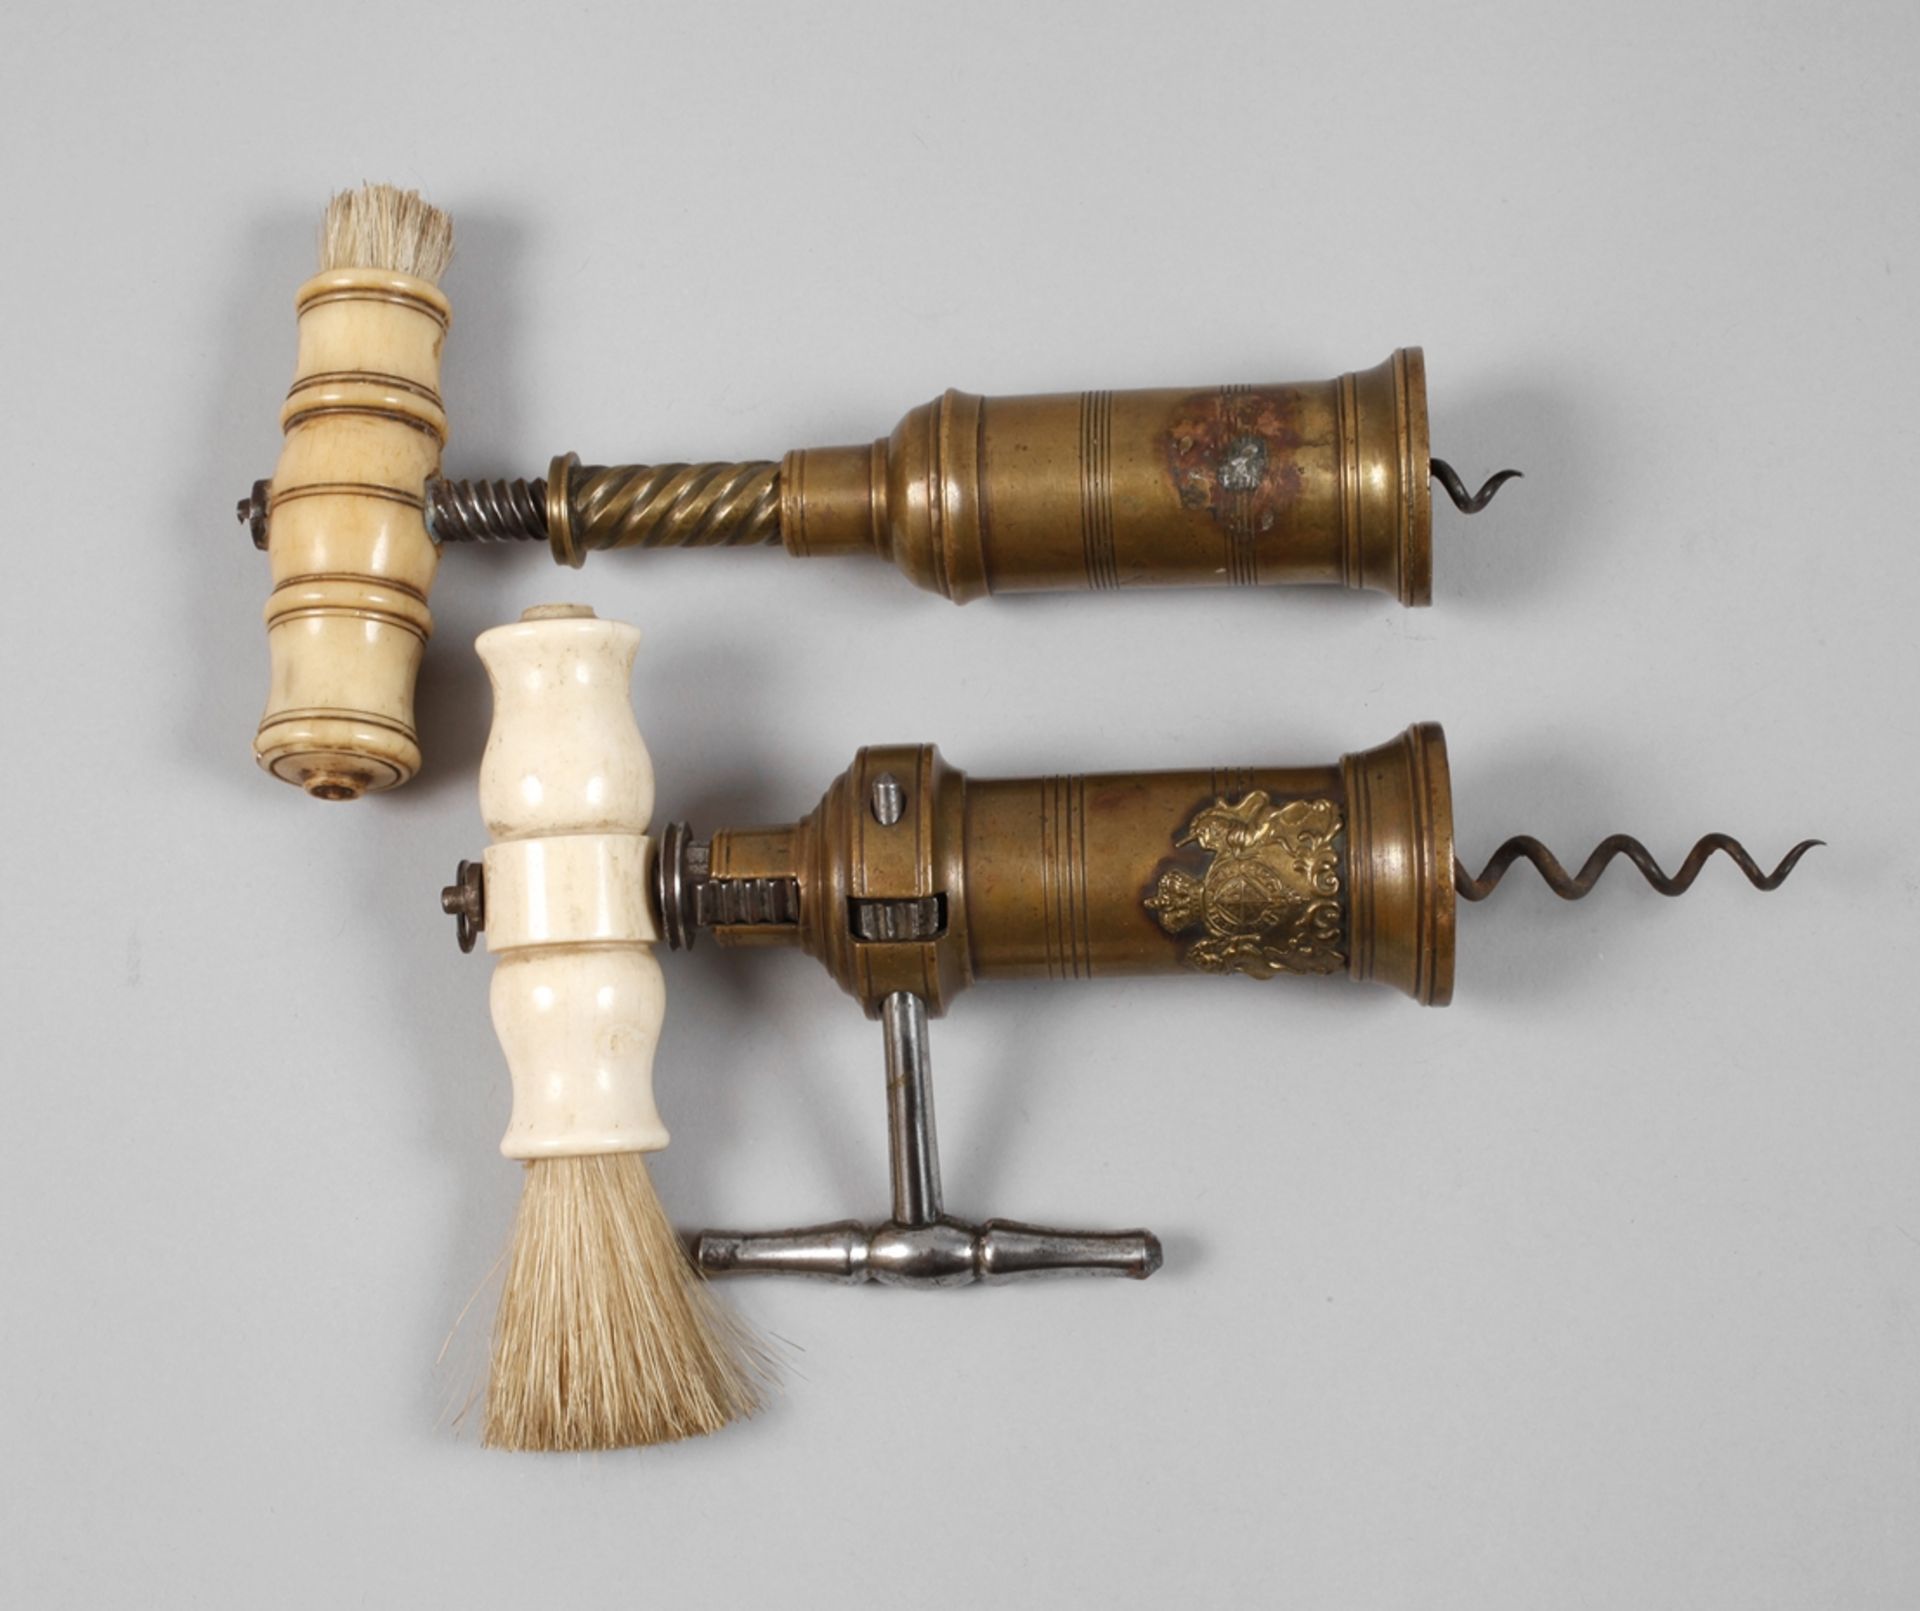 Two patent corkscrews